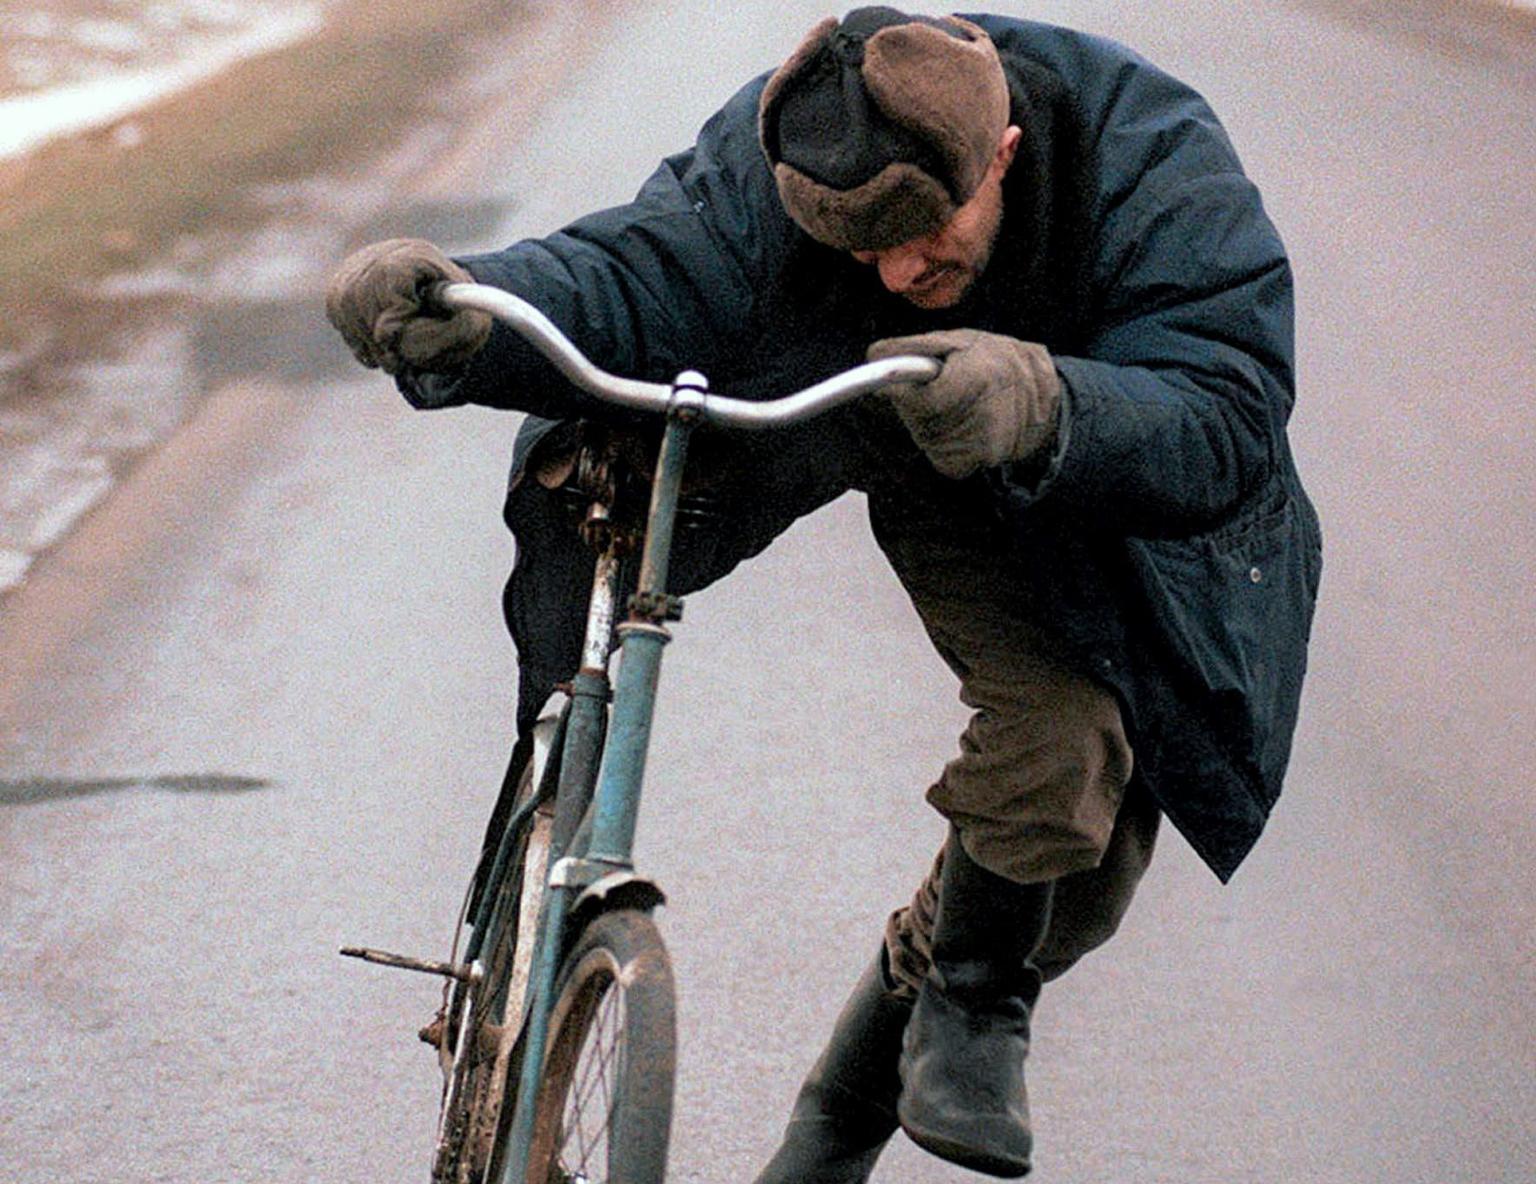 ИИББ маст ҳолда ҳатто велосипед бошқариш ҳам мумкин эмаслигини эслатди